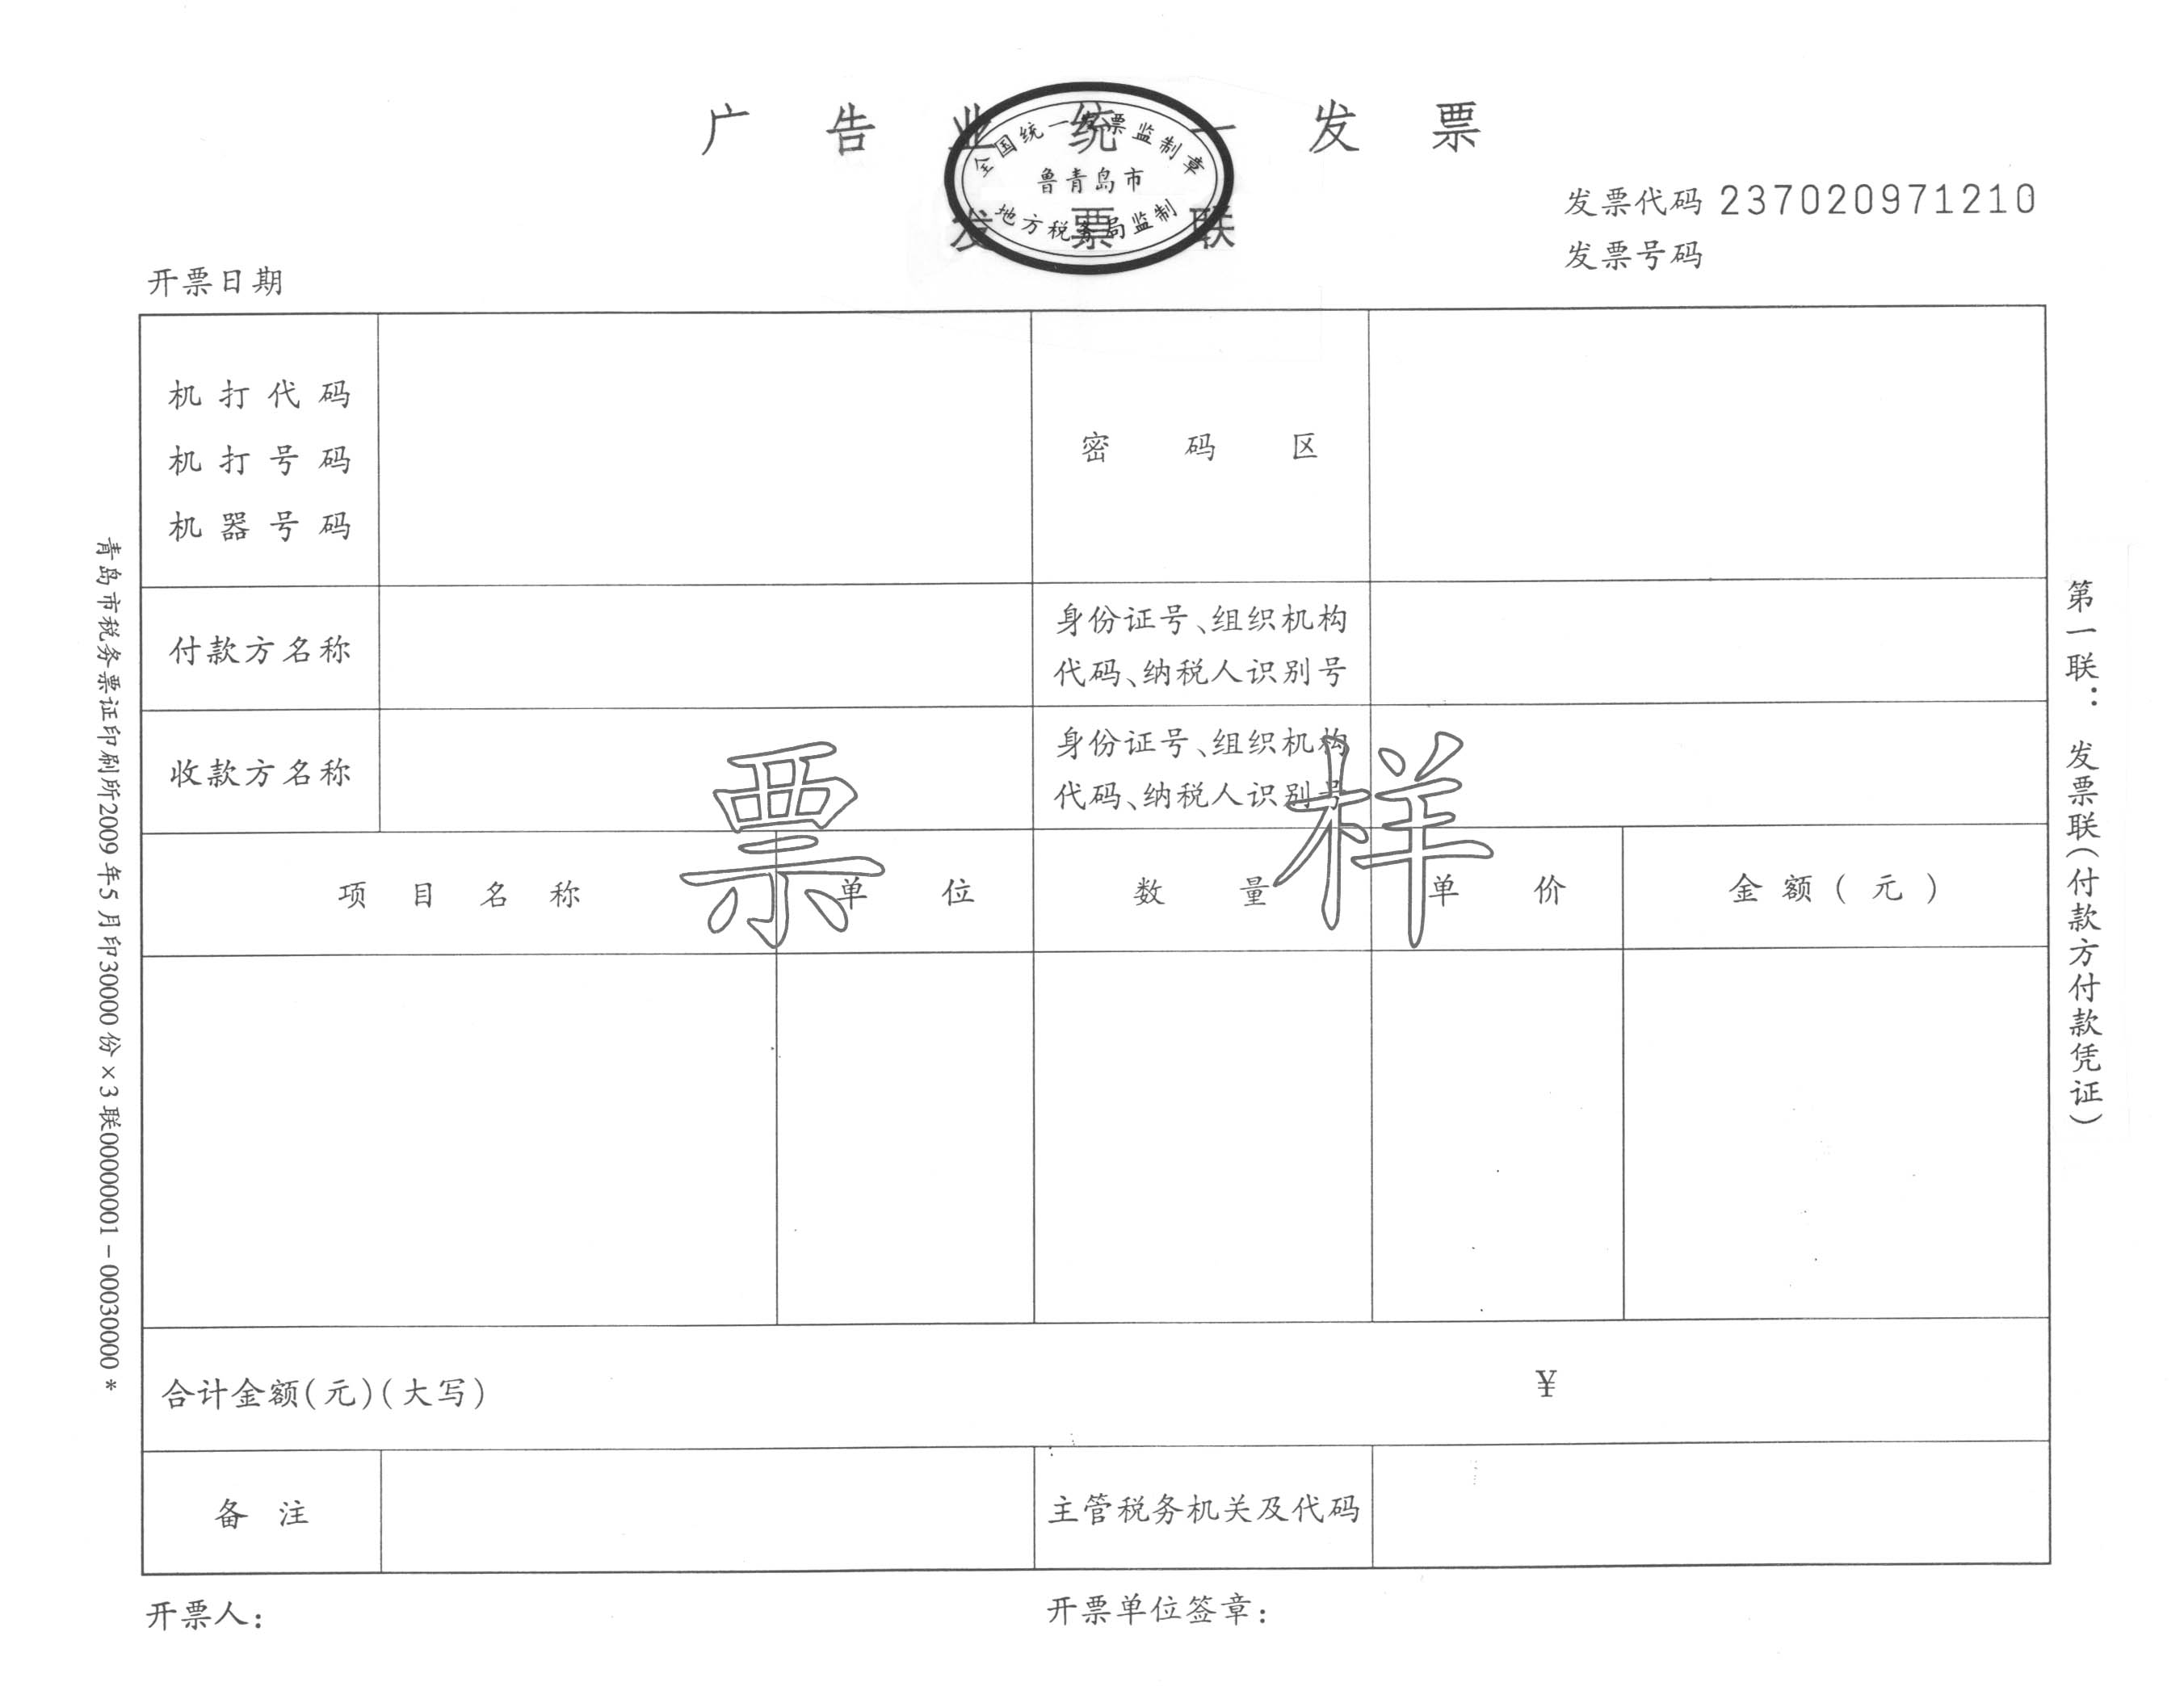 青地税发[2009]99号 青岛市地税局关于启用新版《广告业统一发票》的